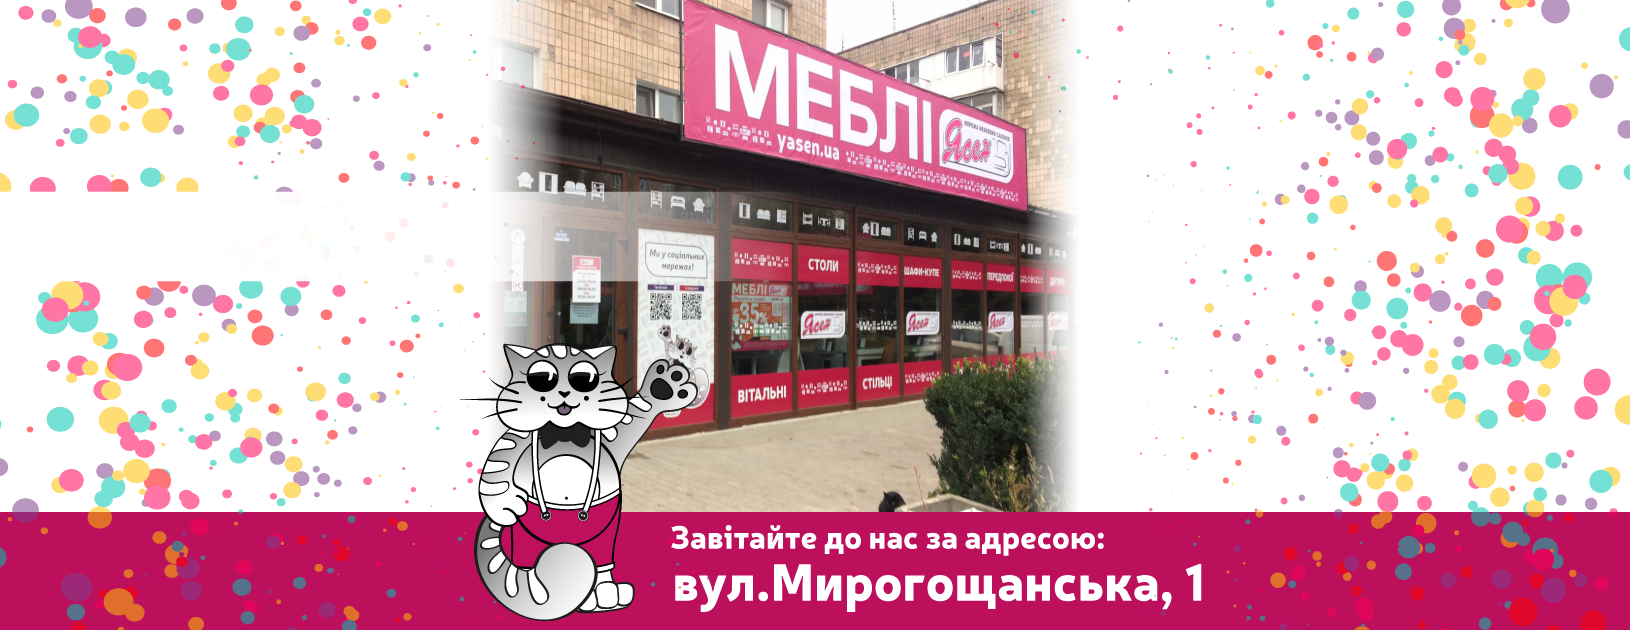 Відкриття меблевого салону "Ясен" у місті Дубно!!!